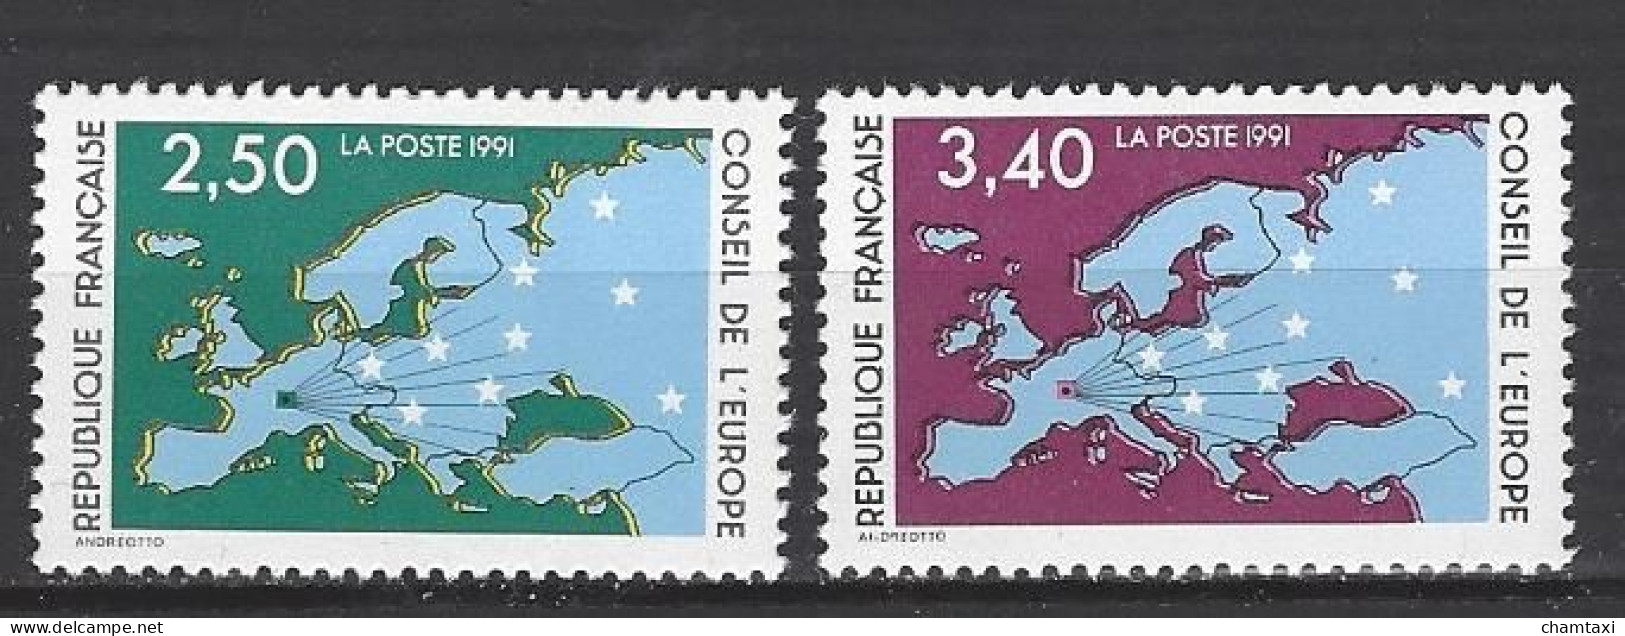 CONSEIL DE L EUROPE 1991 TIMBRE SERVICE 106 107 CARTE D EUROPE ET ETOILES - Nuevos